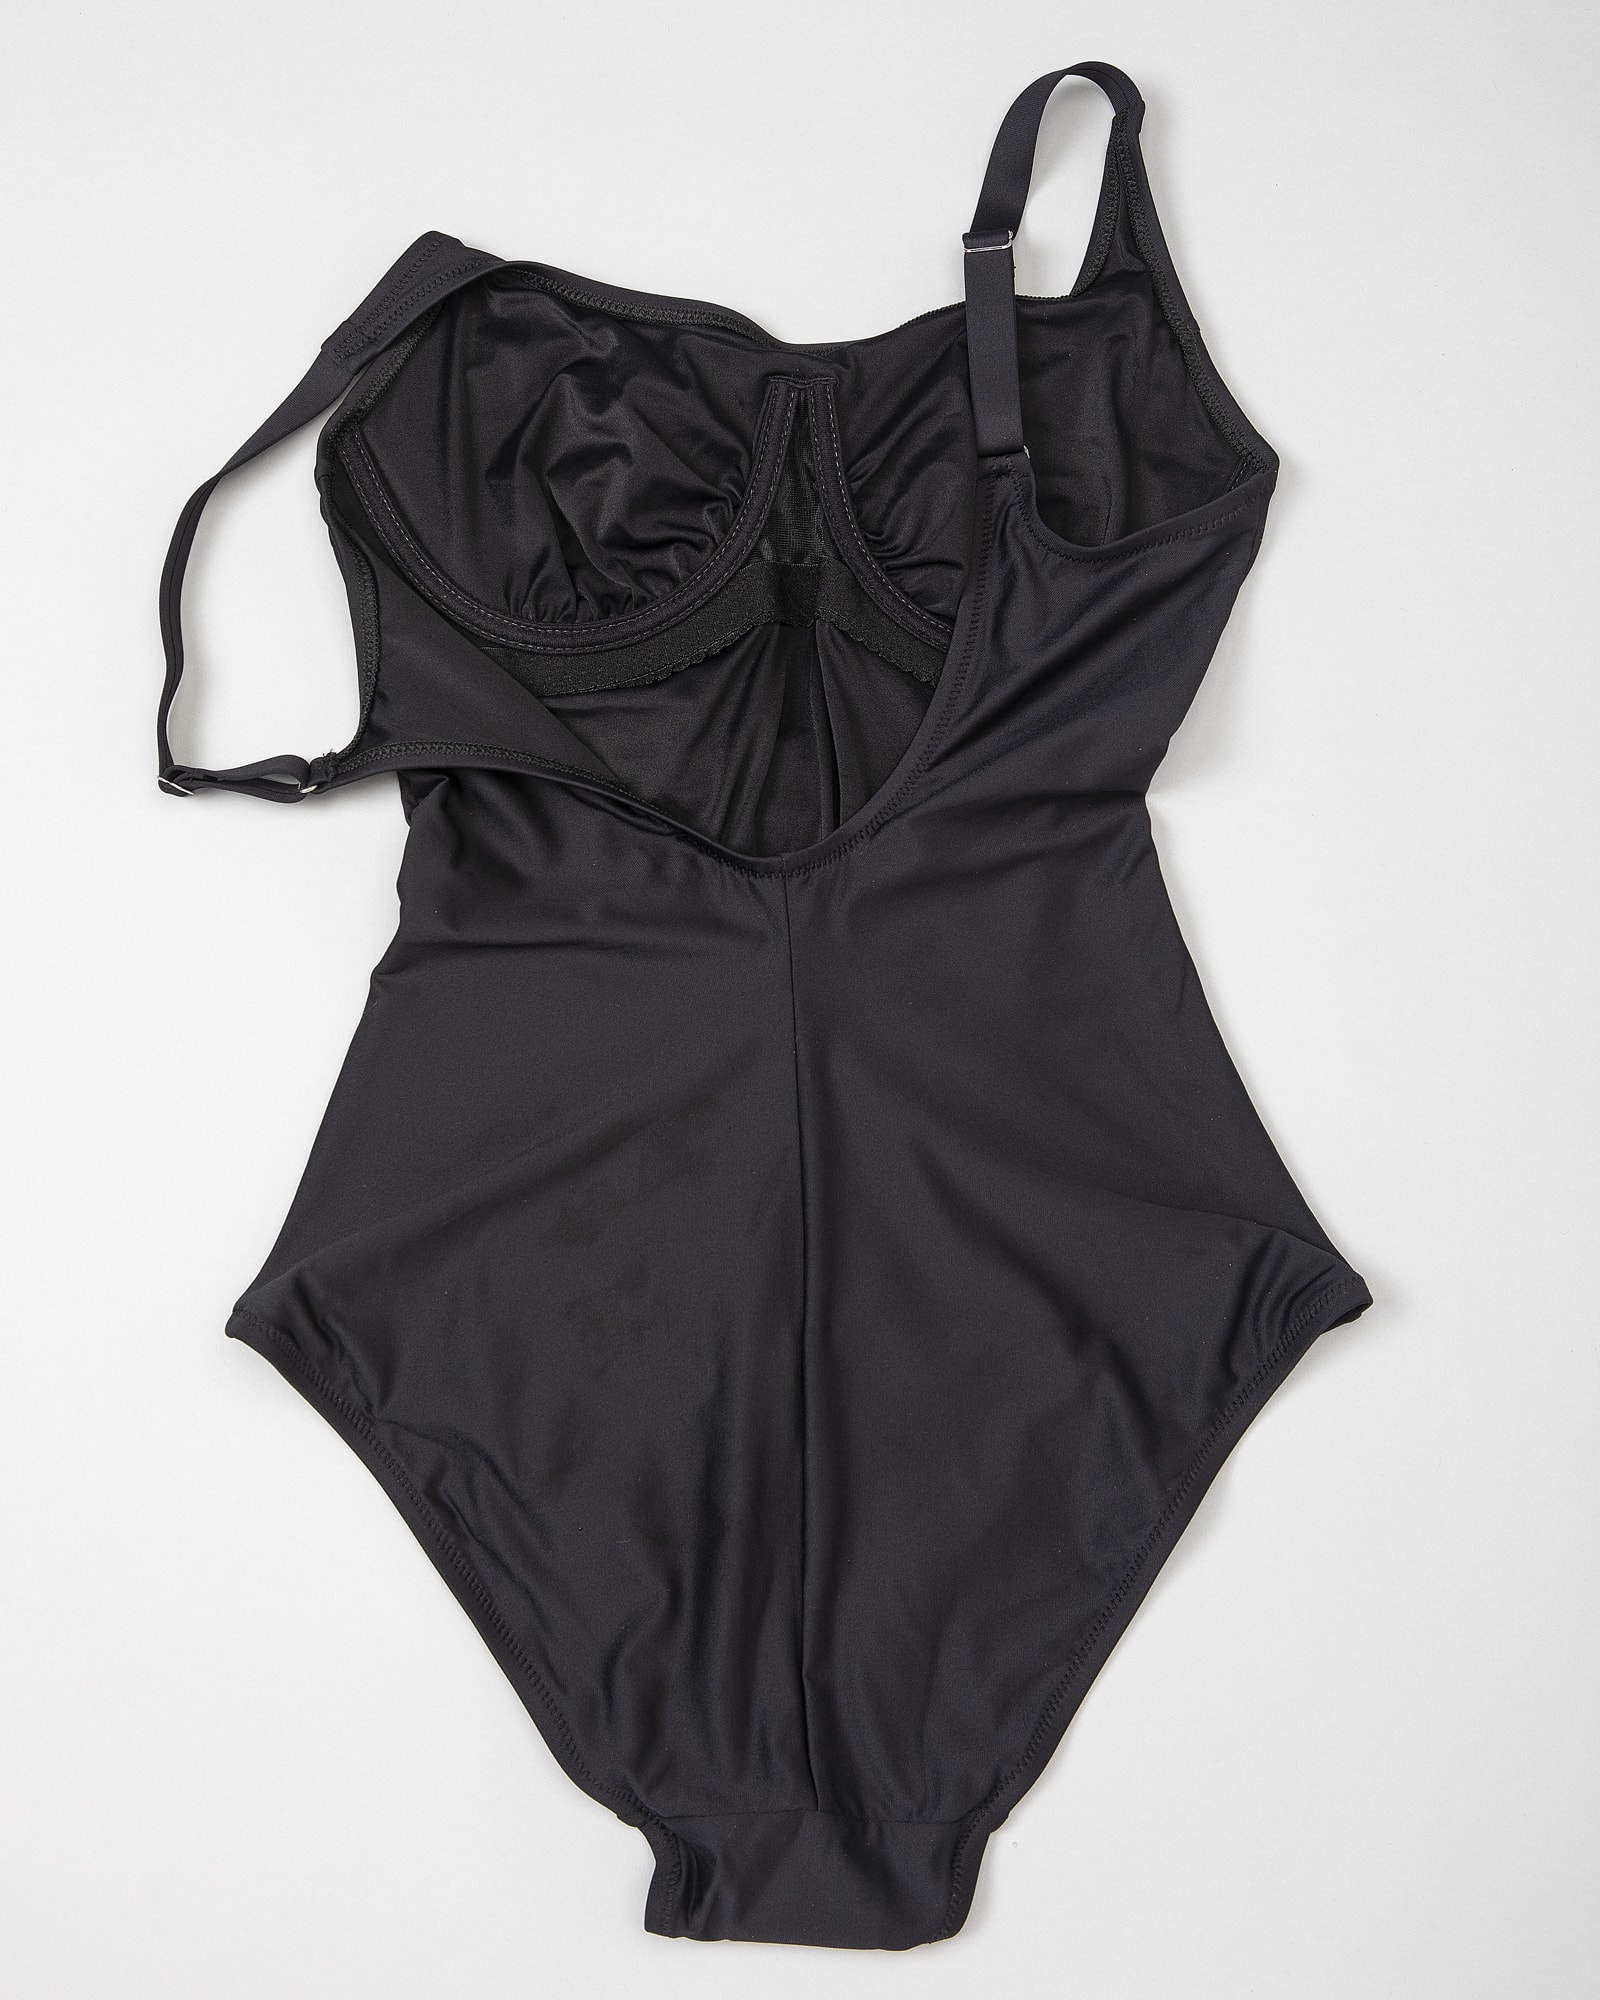 Antigel L'estivale Chic Swimsuit - Black fba6216-0005 d